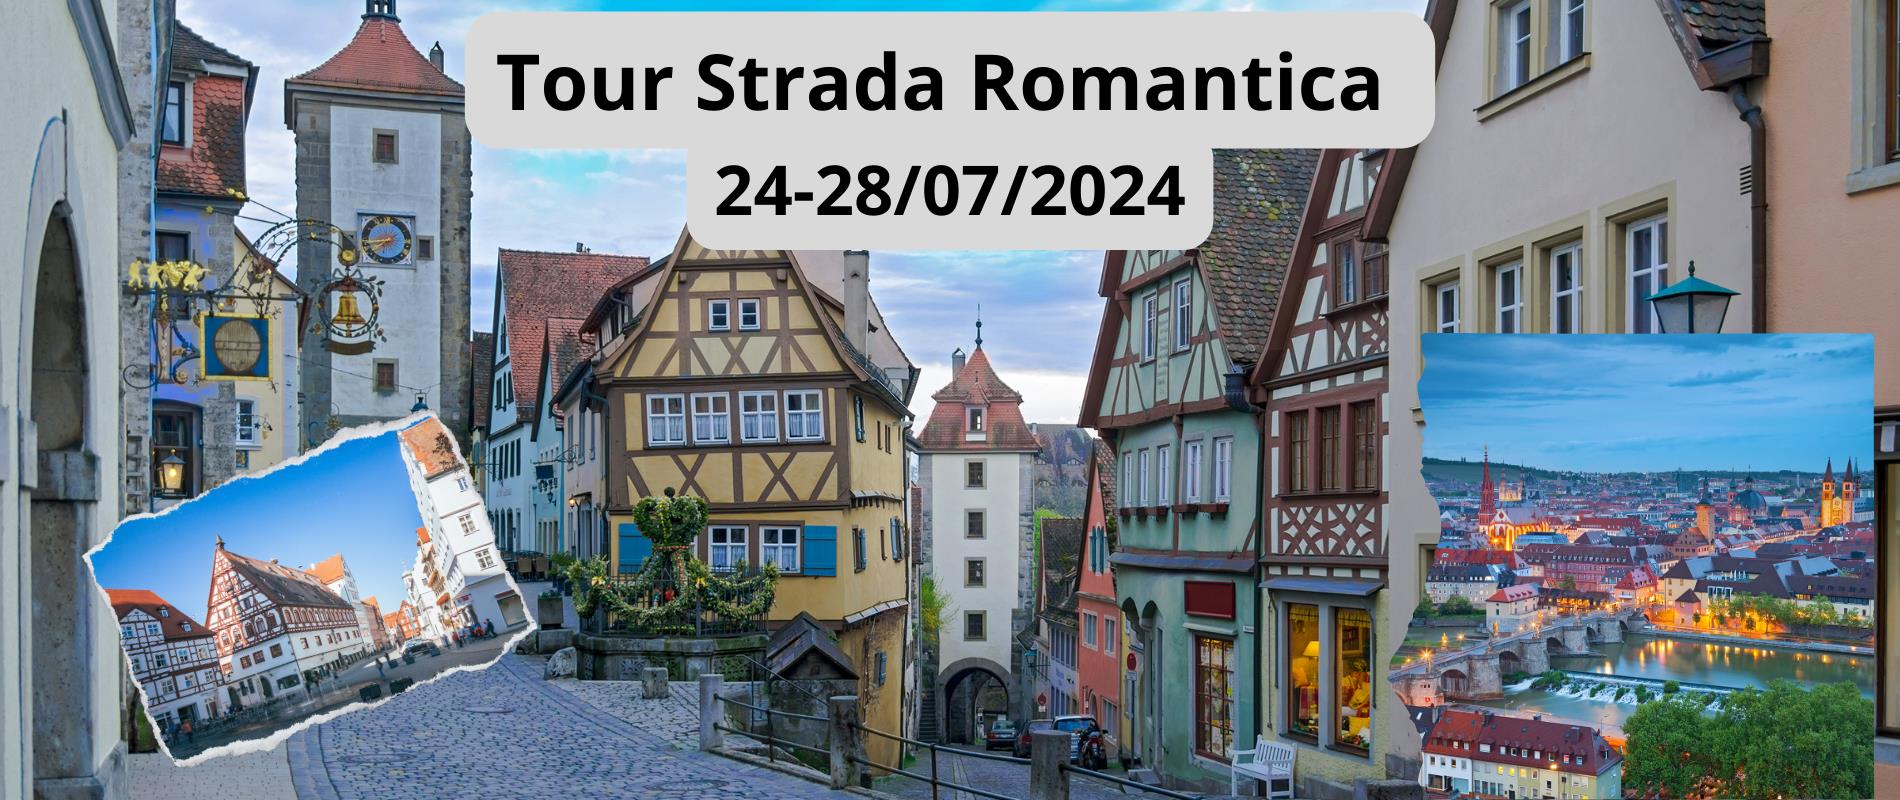 Tour Strada Romantica 